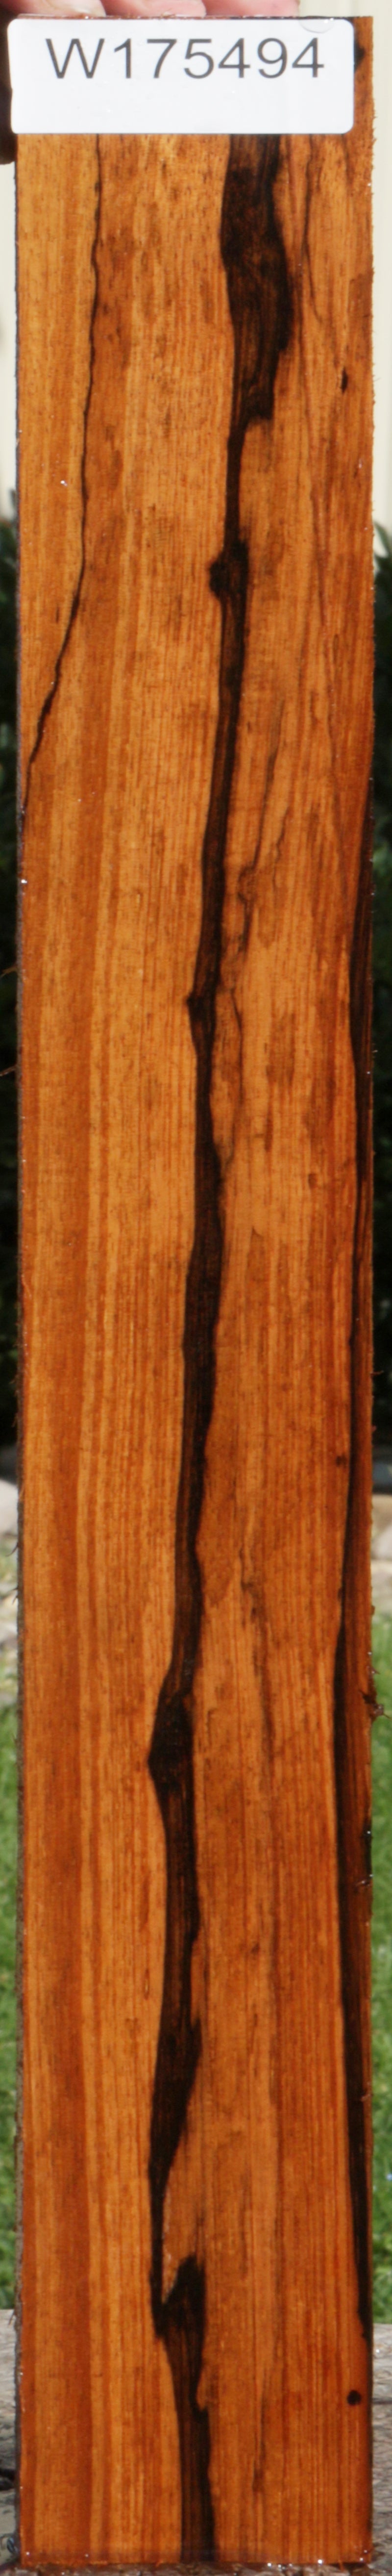 Extra Fancy Monterillo Rosewood Lumber